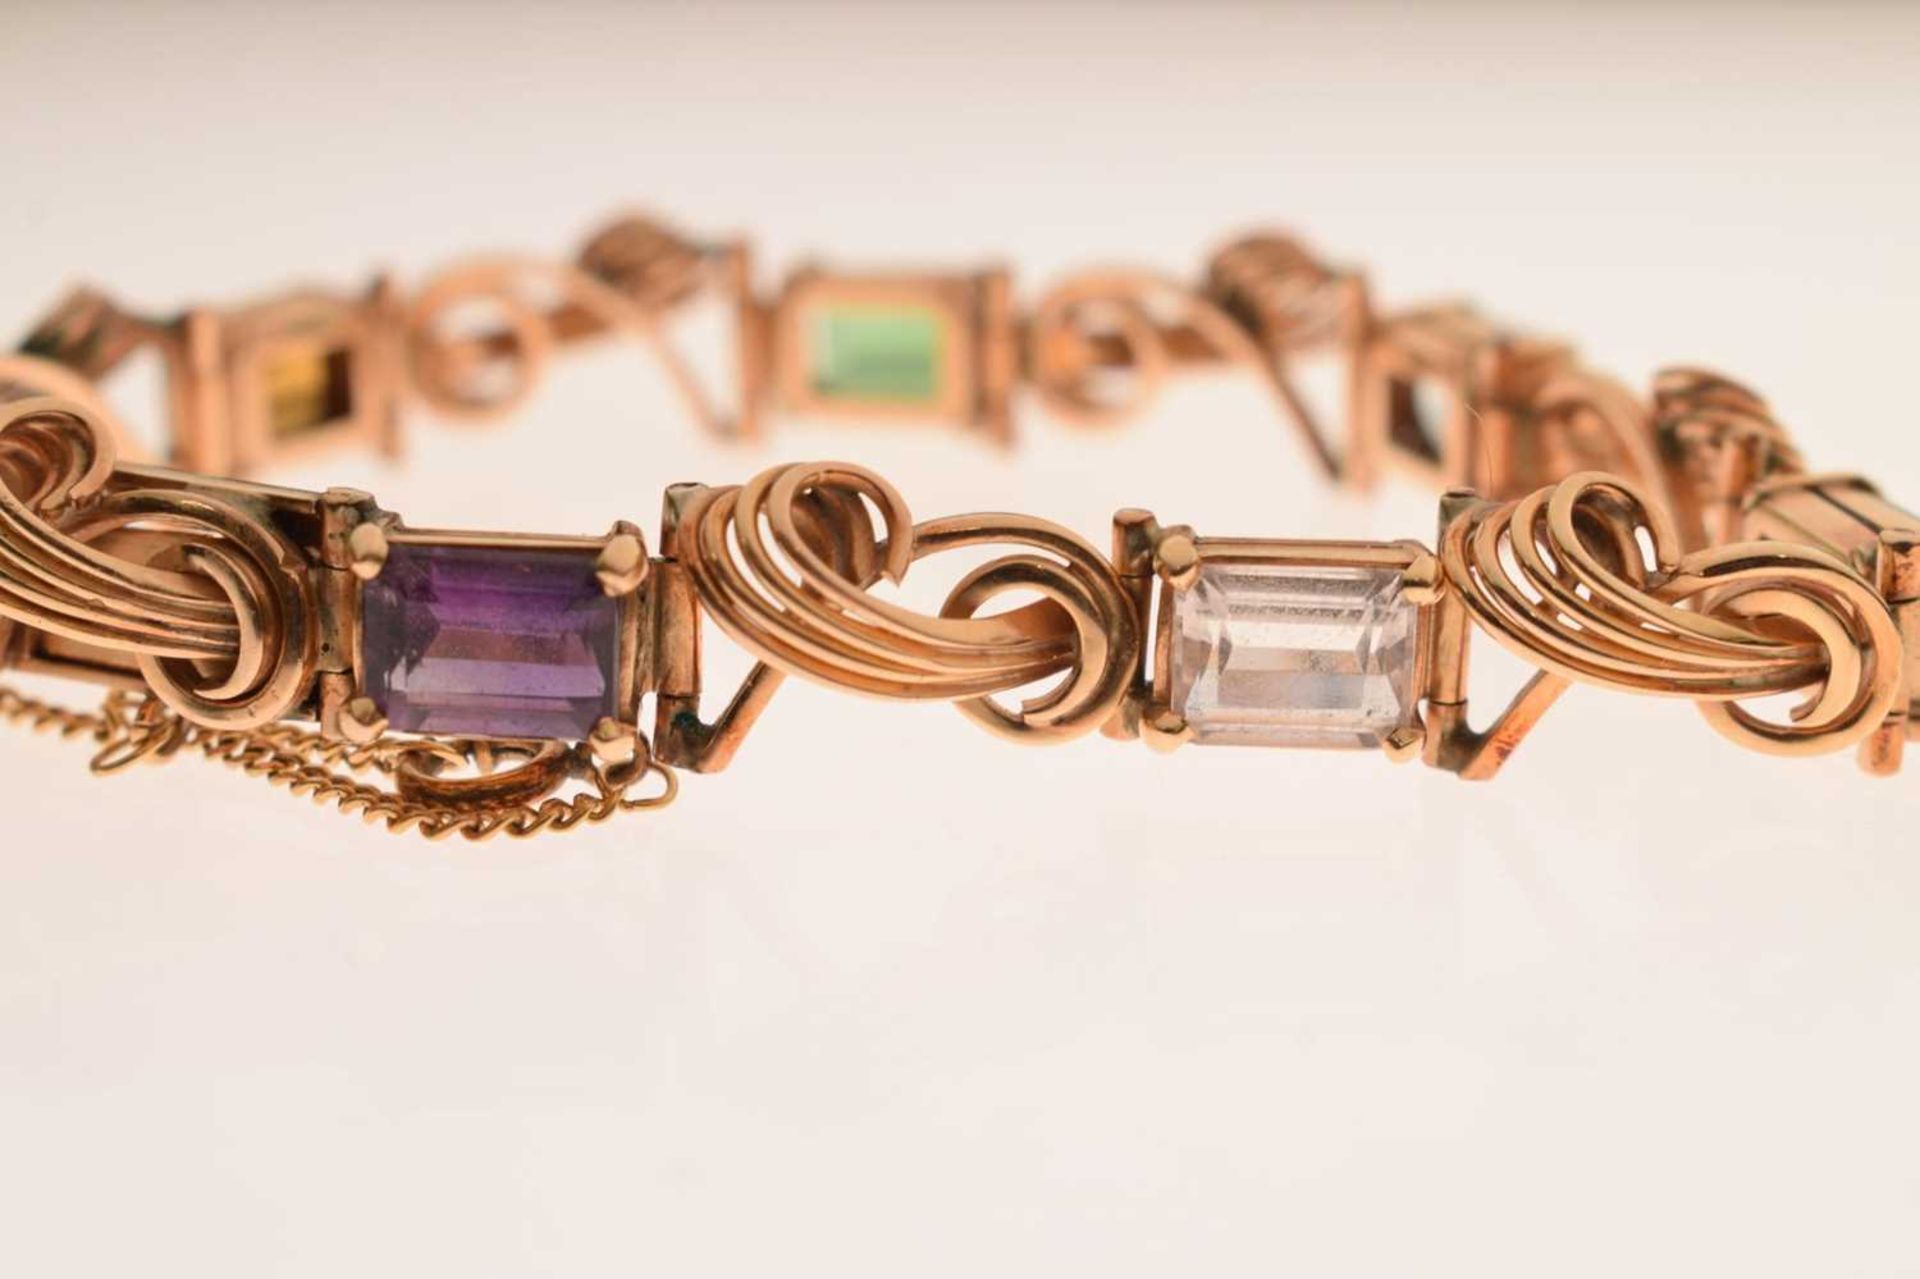 Multi-gem set 18ct gold bracelet - Image 5 of 12